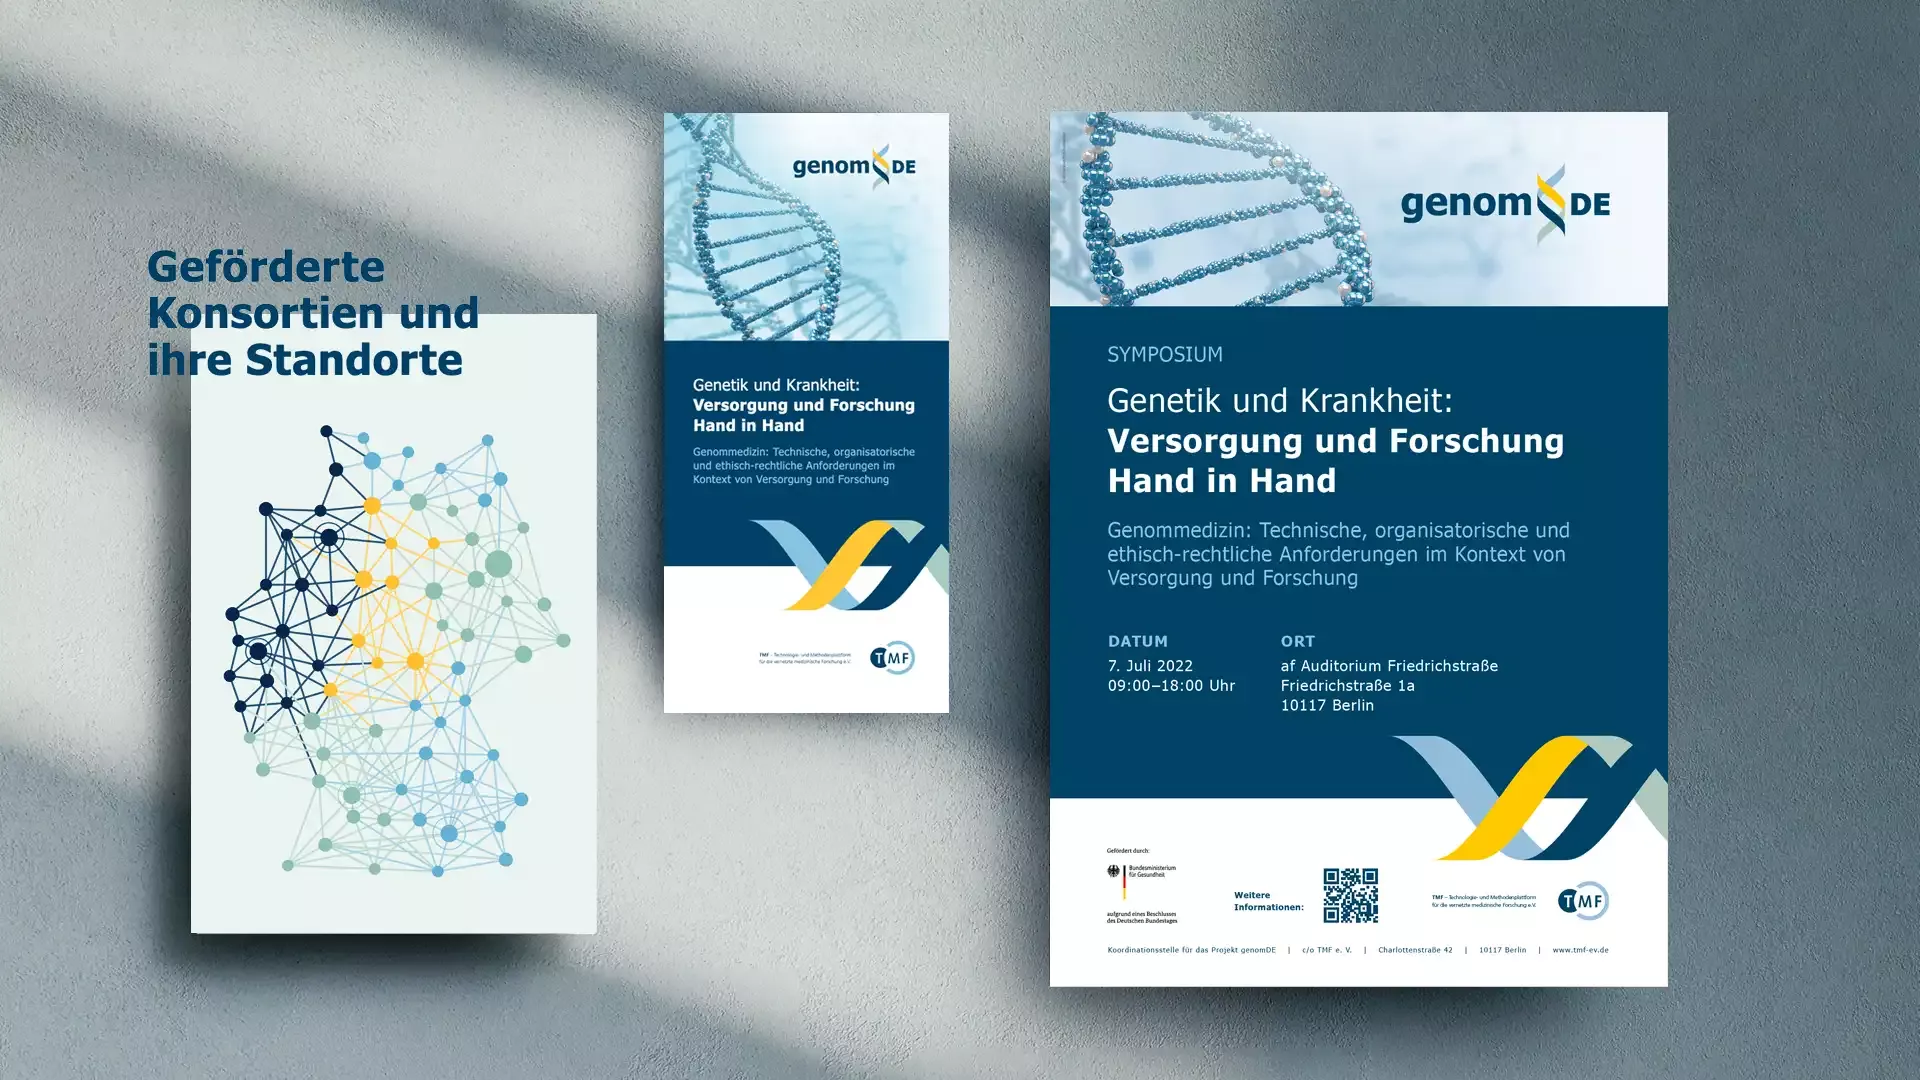 Referenzen genom.de | Printmaterialien